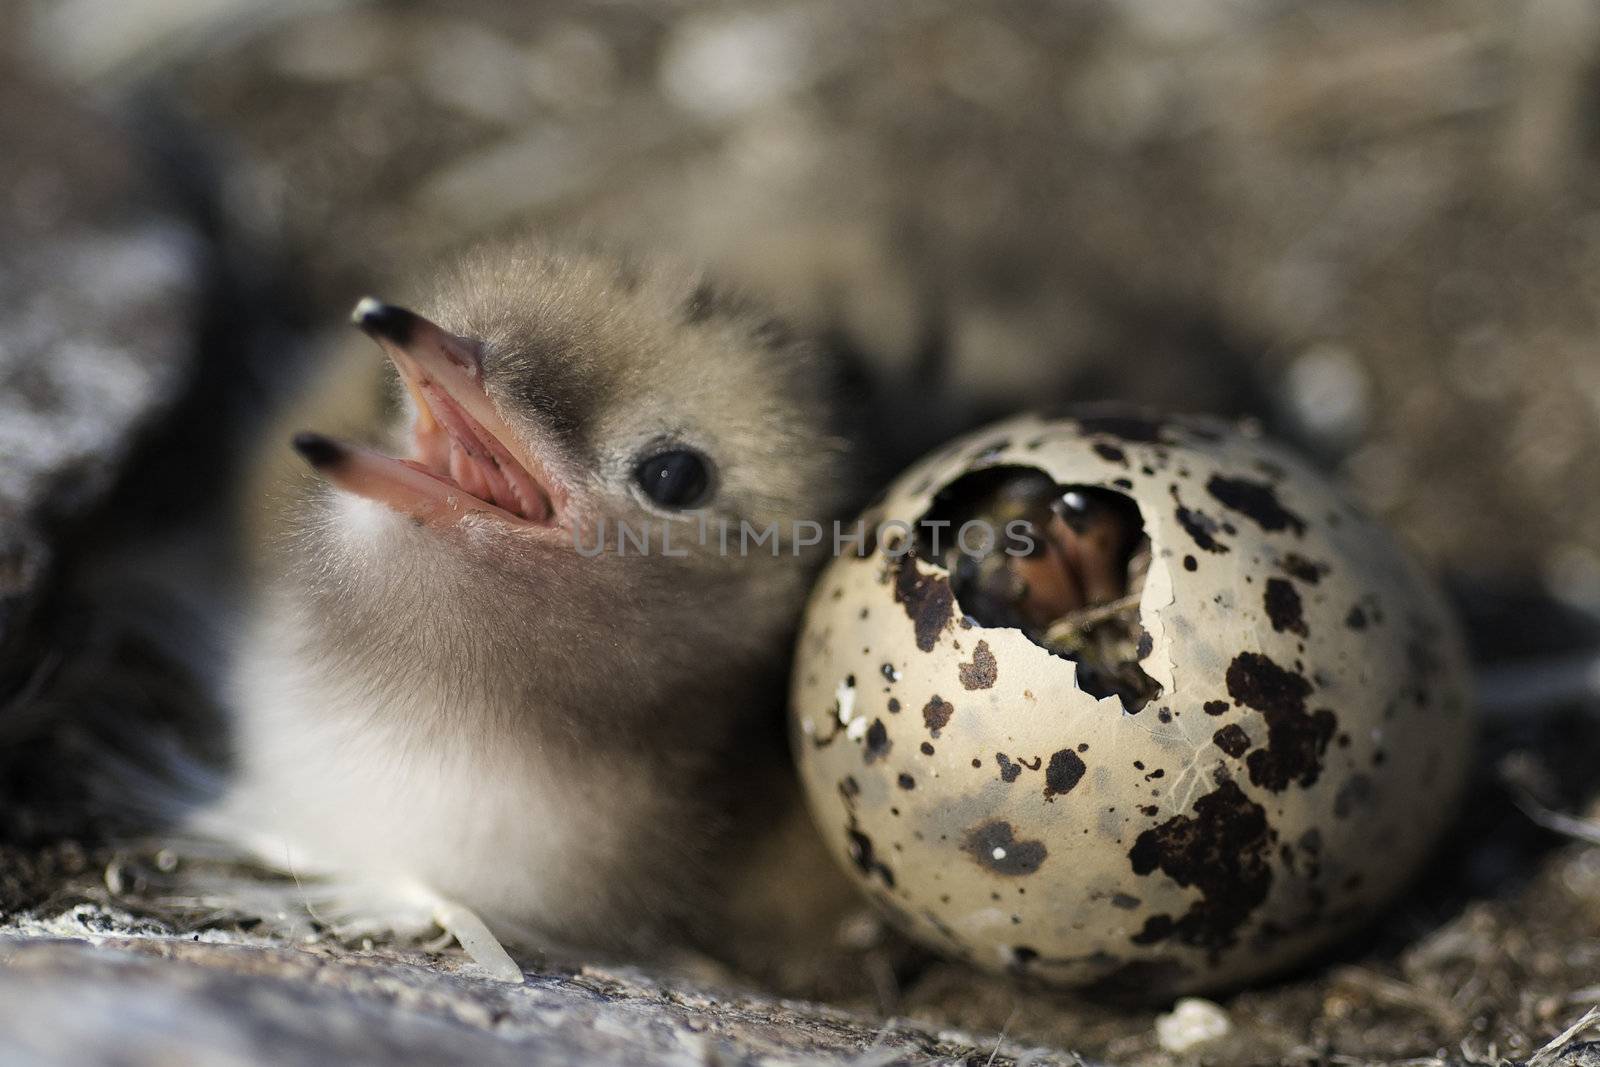 Just hatching baby bird. by SURZ